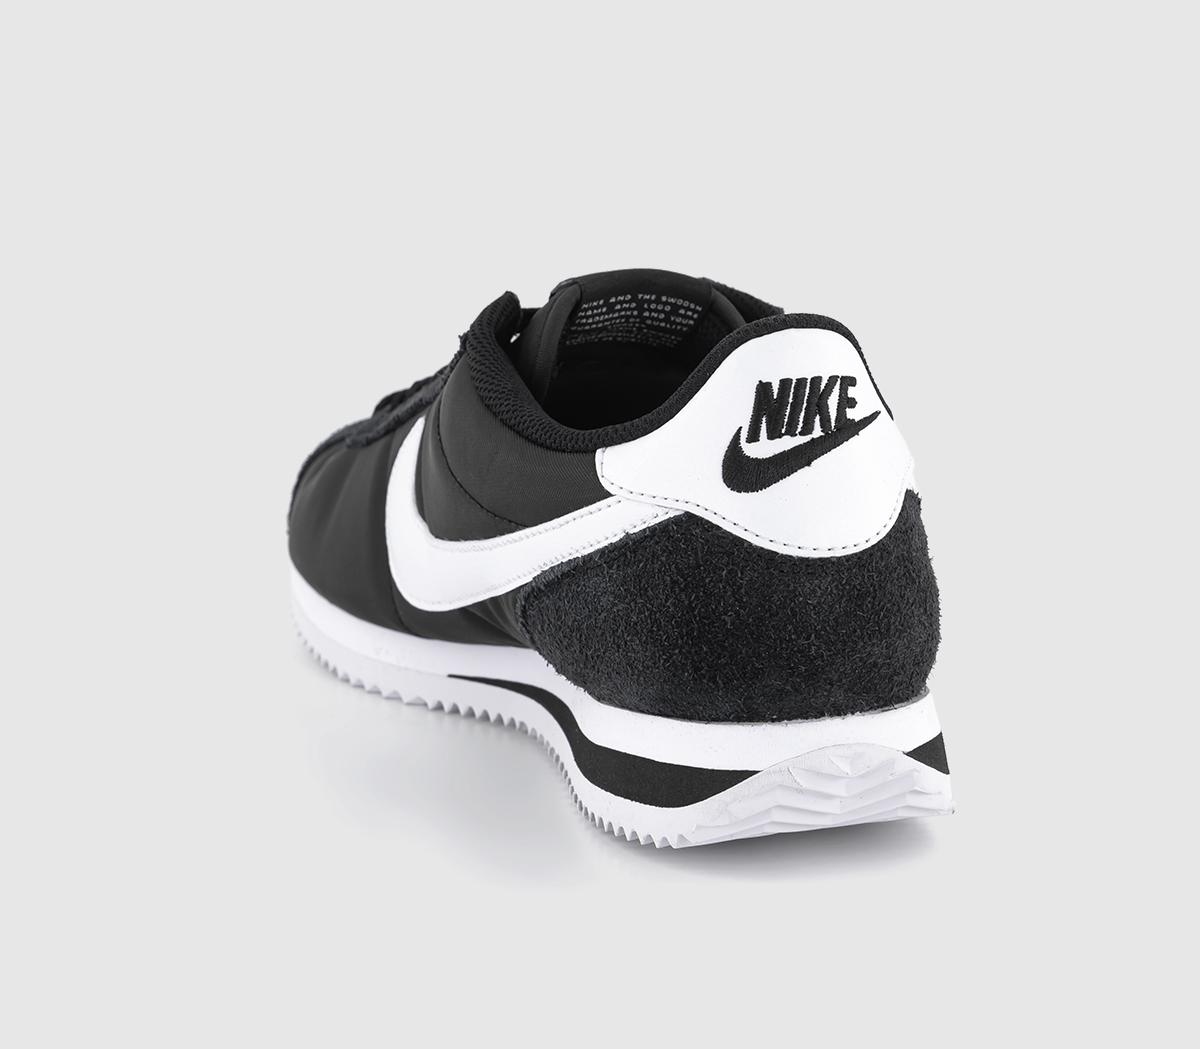 Nike Nike Cortez Trainers Black White - Unisex Sports